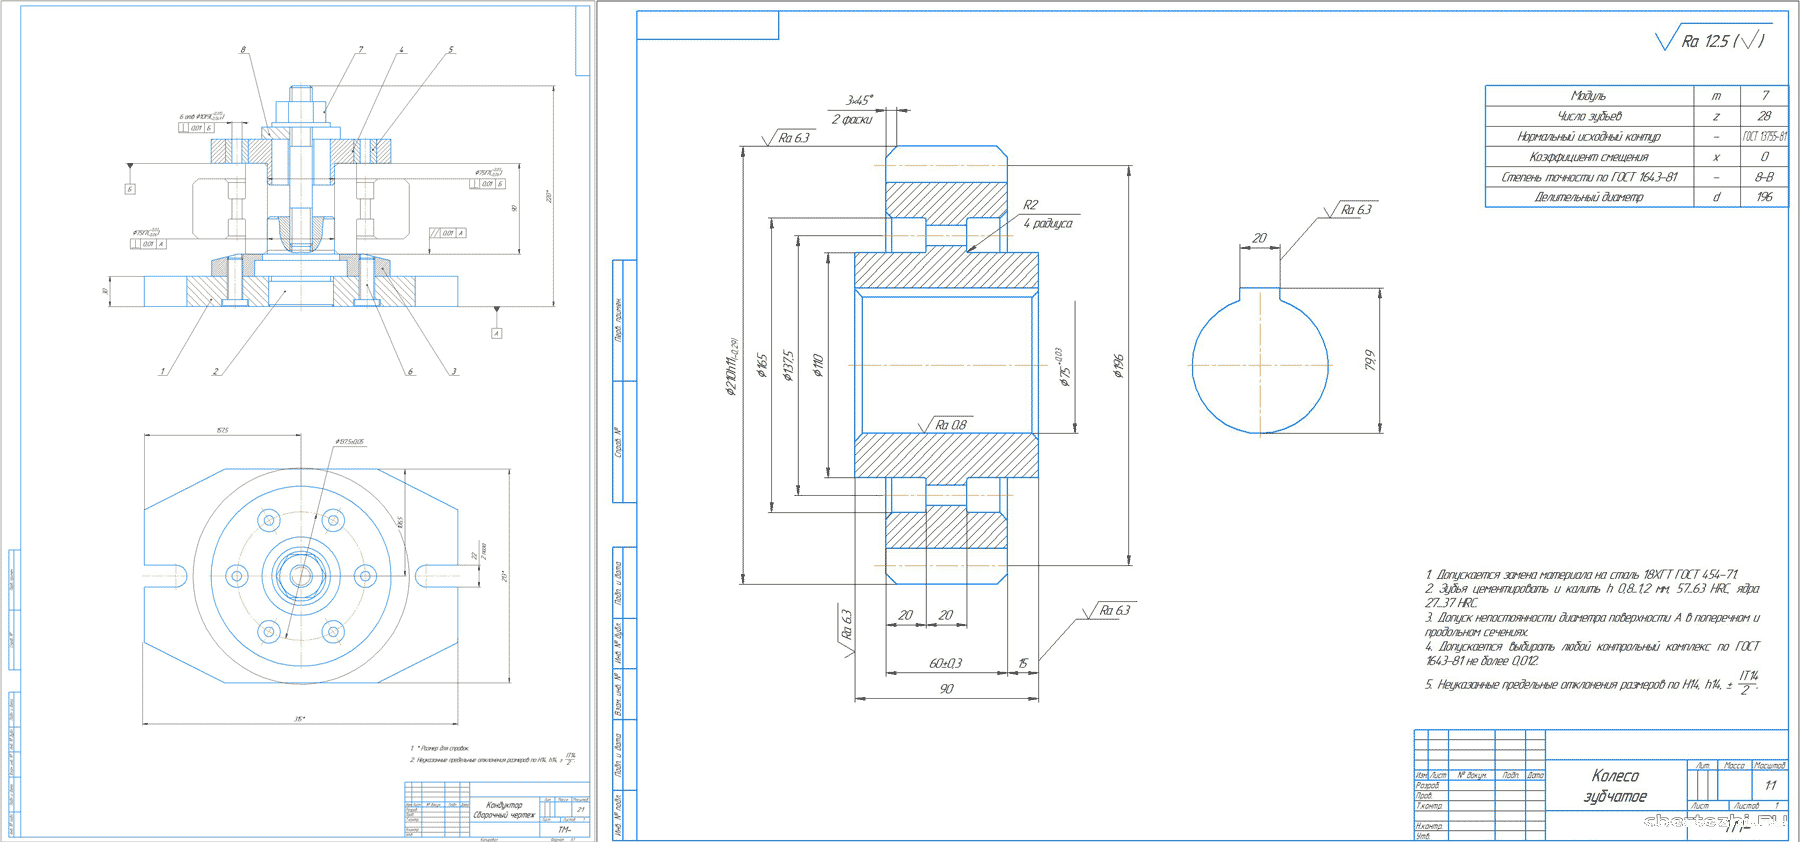 Курсовой проект (техникум) - Разработка станочного приспособления для детали 